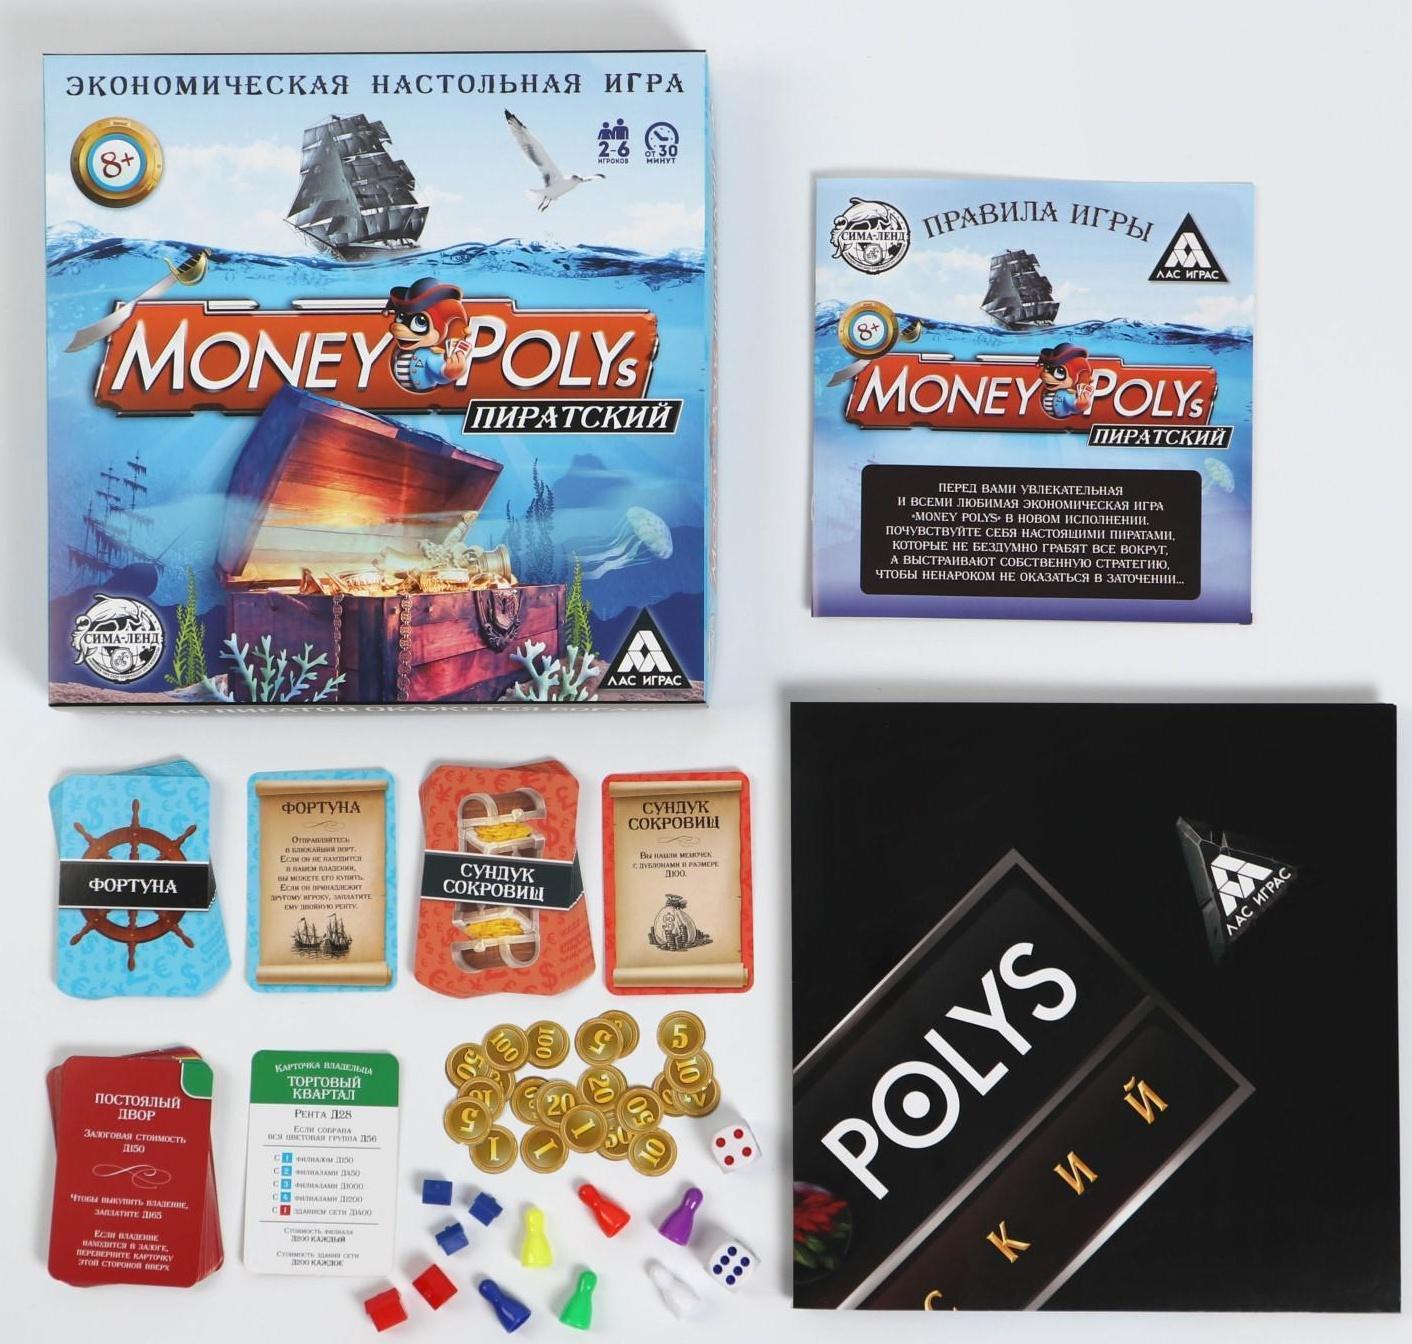 Экономическая игра «MONEY POLYS. Пиратский», 8+